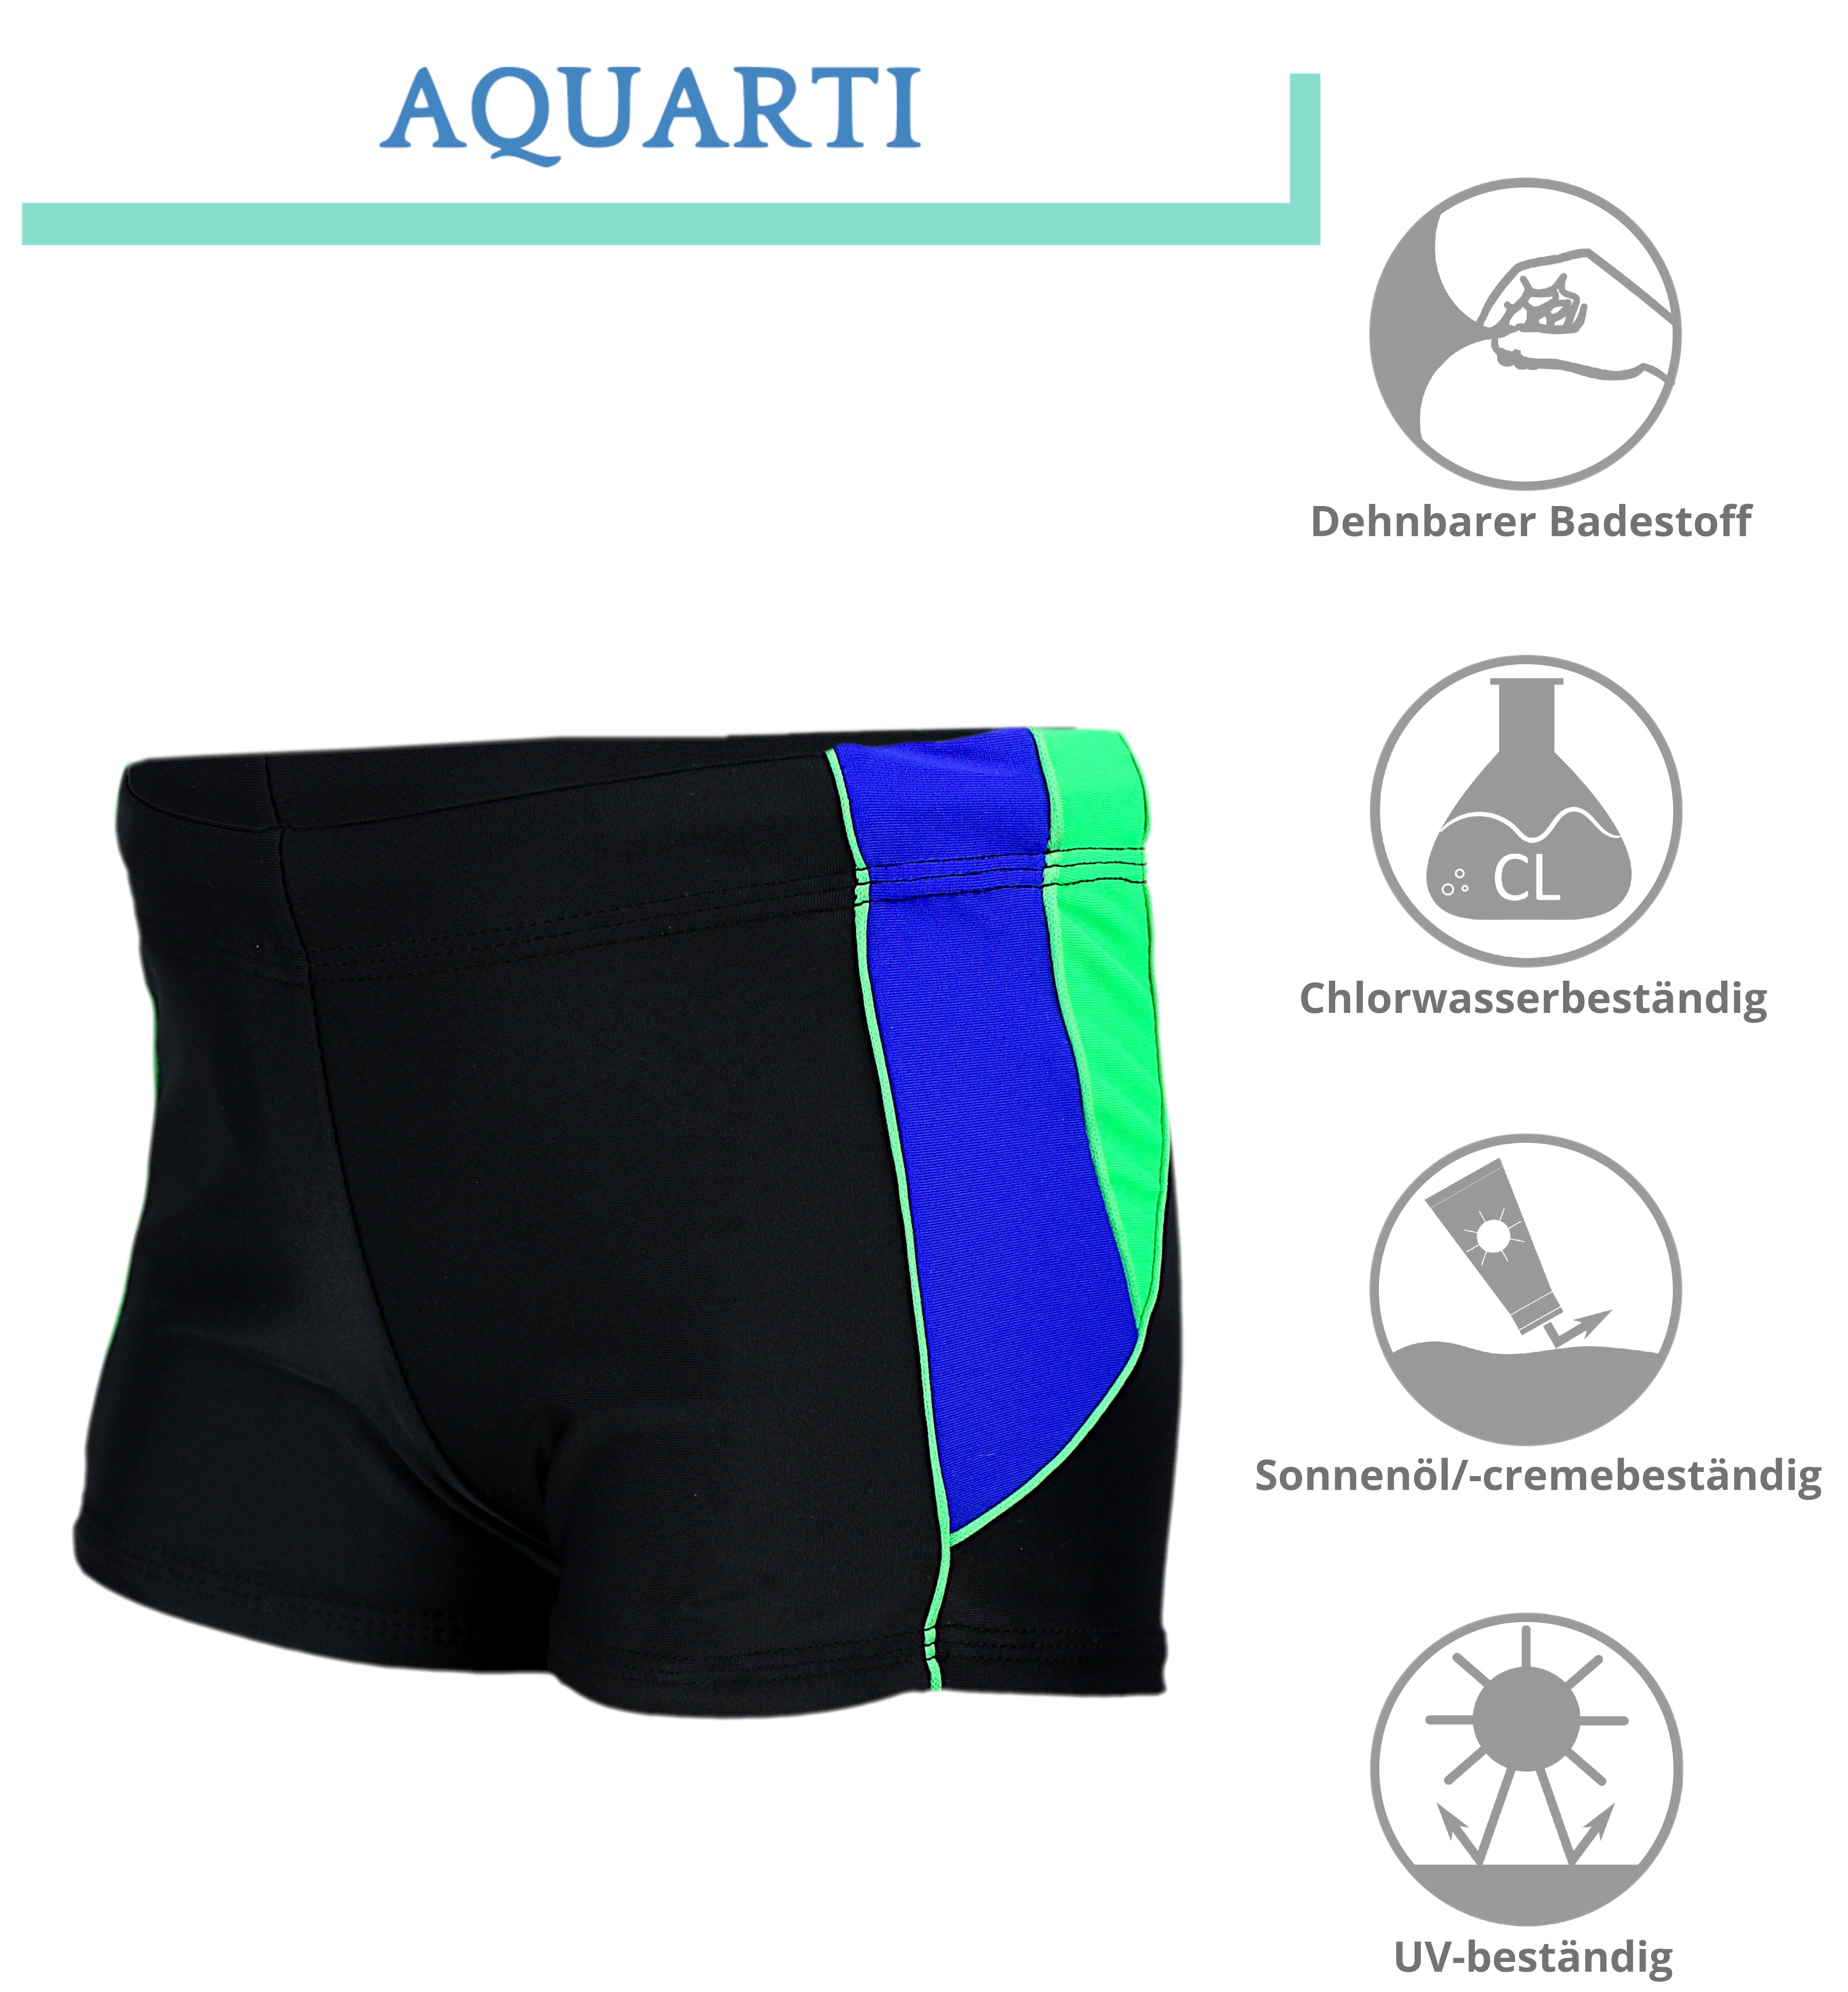 Aquarti Badehose Aquarti mit Kurze Seitlich Jungen Badehose Schwarz/Blau/Grün Einsätzen